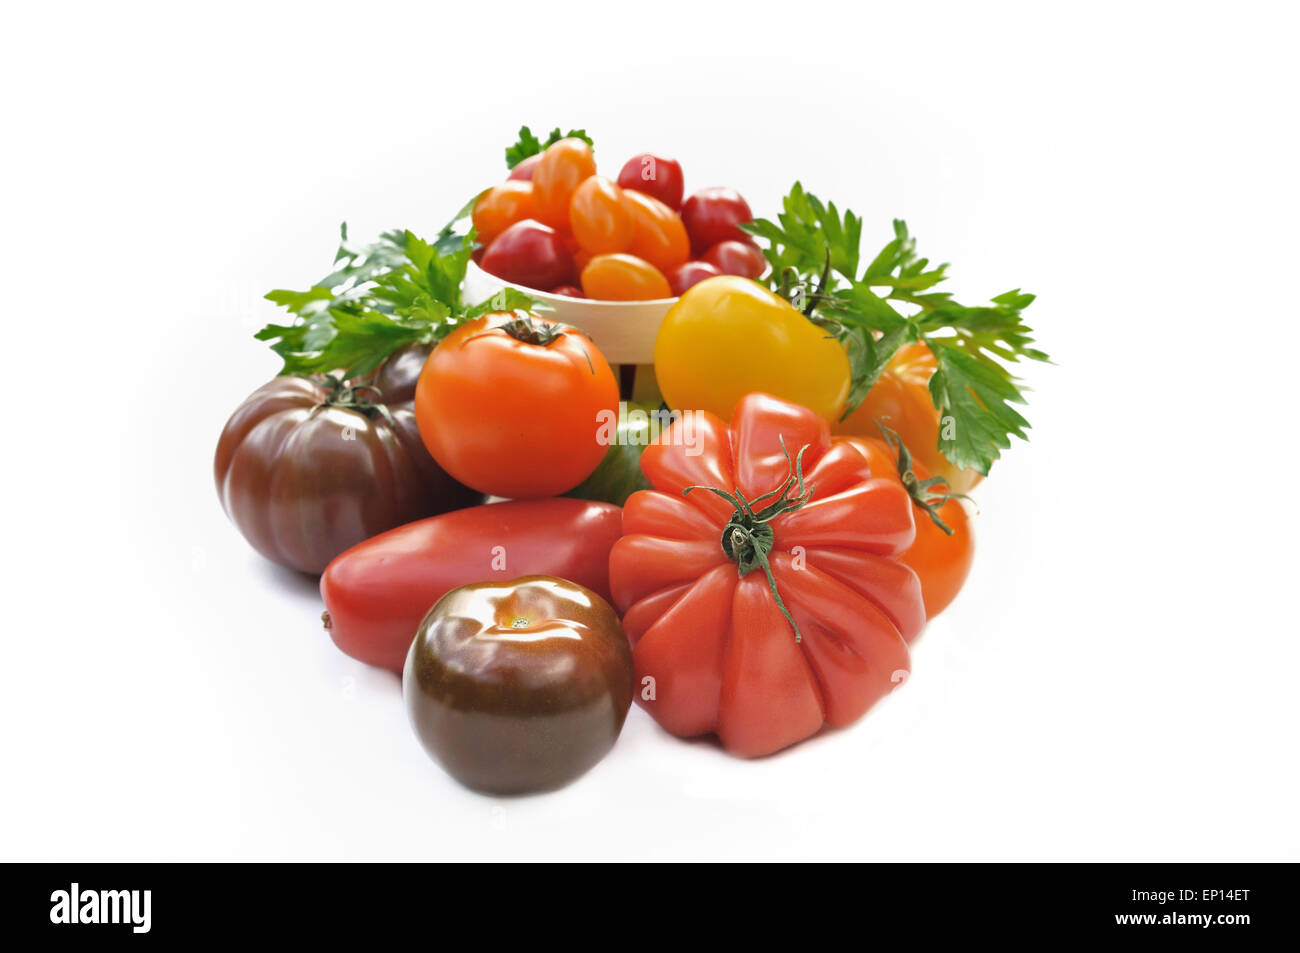 Assortiment de tomates avec différentes formes et couleurs sur fond blanc Banque D'Images